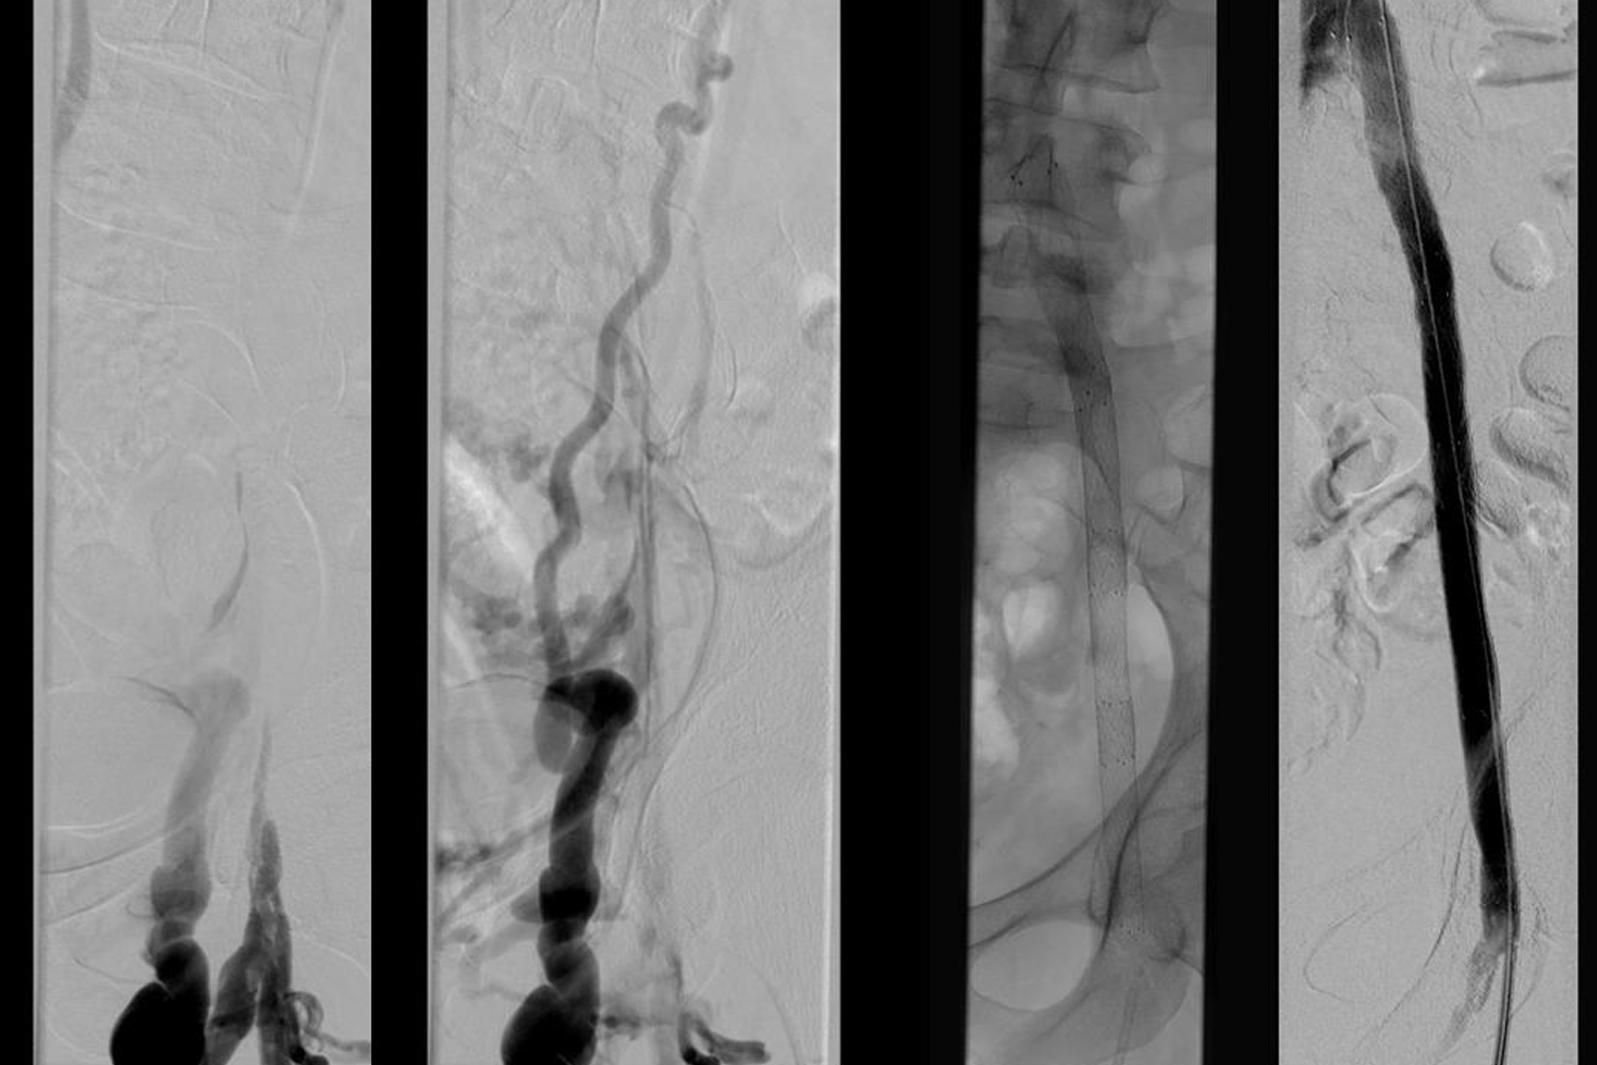 Rekanalisation eines alten Beckenvenenverschlusses bei posthrombotischem Syndrom. Links DSA-vor dem Eingriff,  rechts wiedereröffnete Beckenvenen nach Stent-PTA.